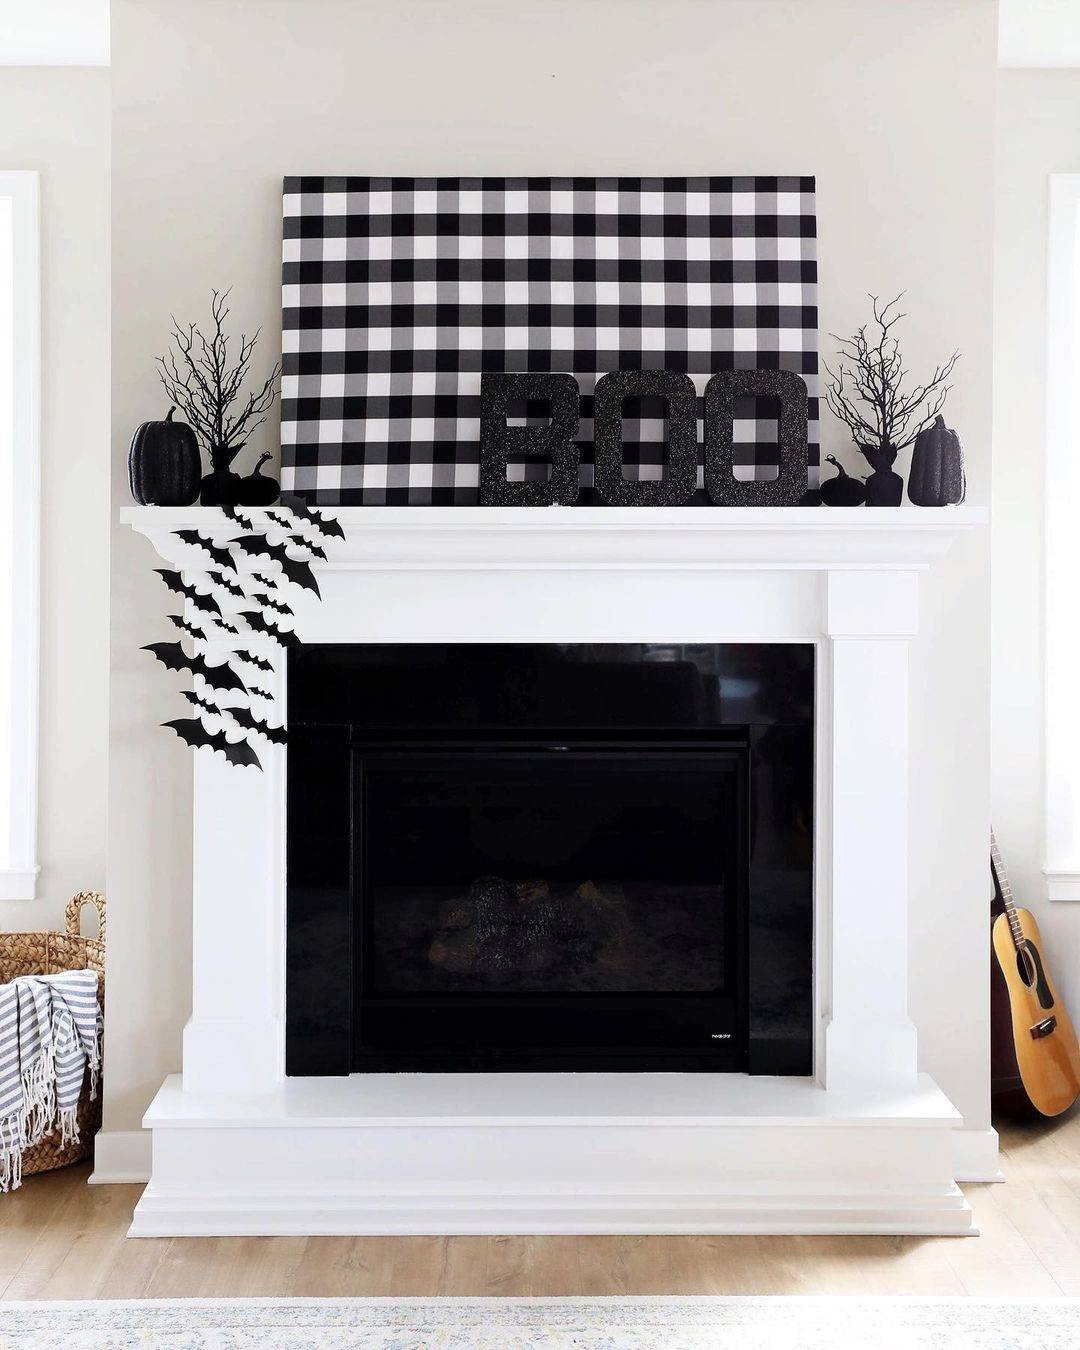 Đen và trắng: Phối màu đen và trắng là một ý tưởng khác để mang đến cho ngôi nhà của bạn một cái nhìn sang trọng, ma quái mà không cảm thấy quá "kinh dị".